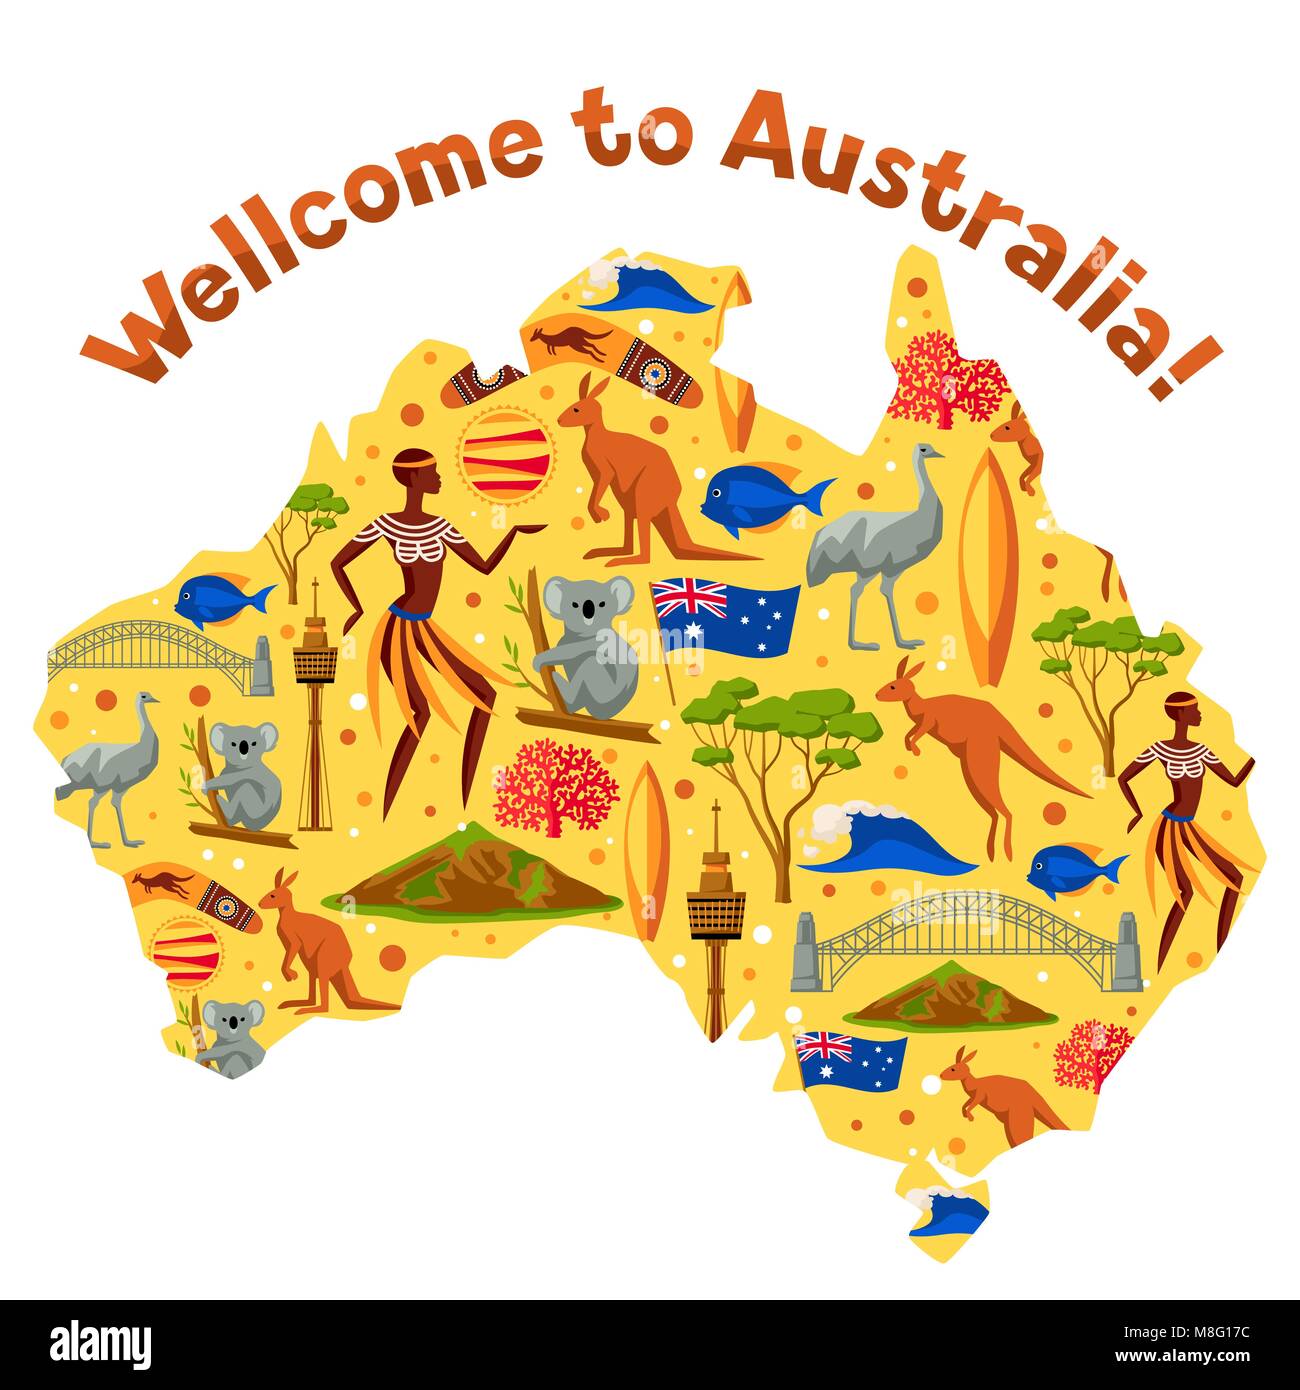 Australie site design. Objets et symboles traditionnels de l'Australie Illustration de Vecteur